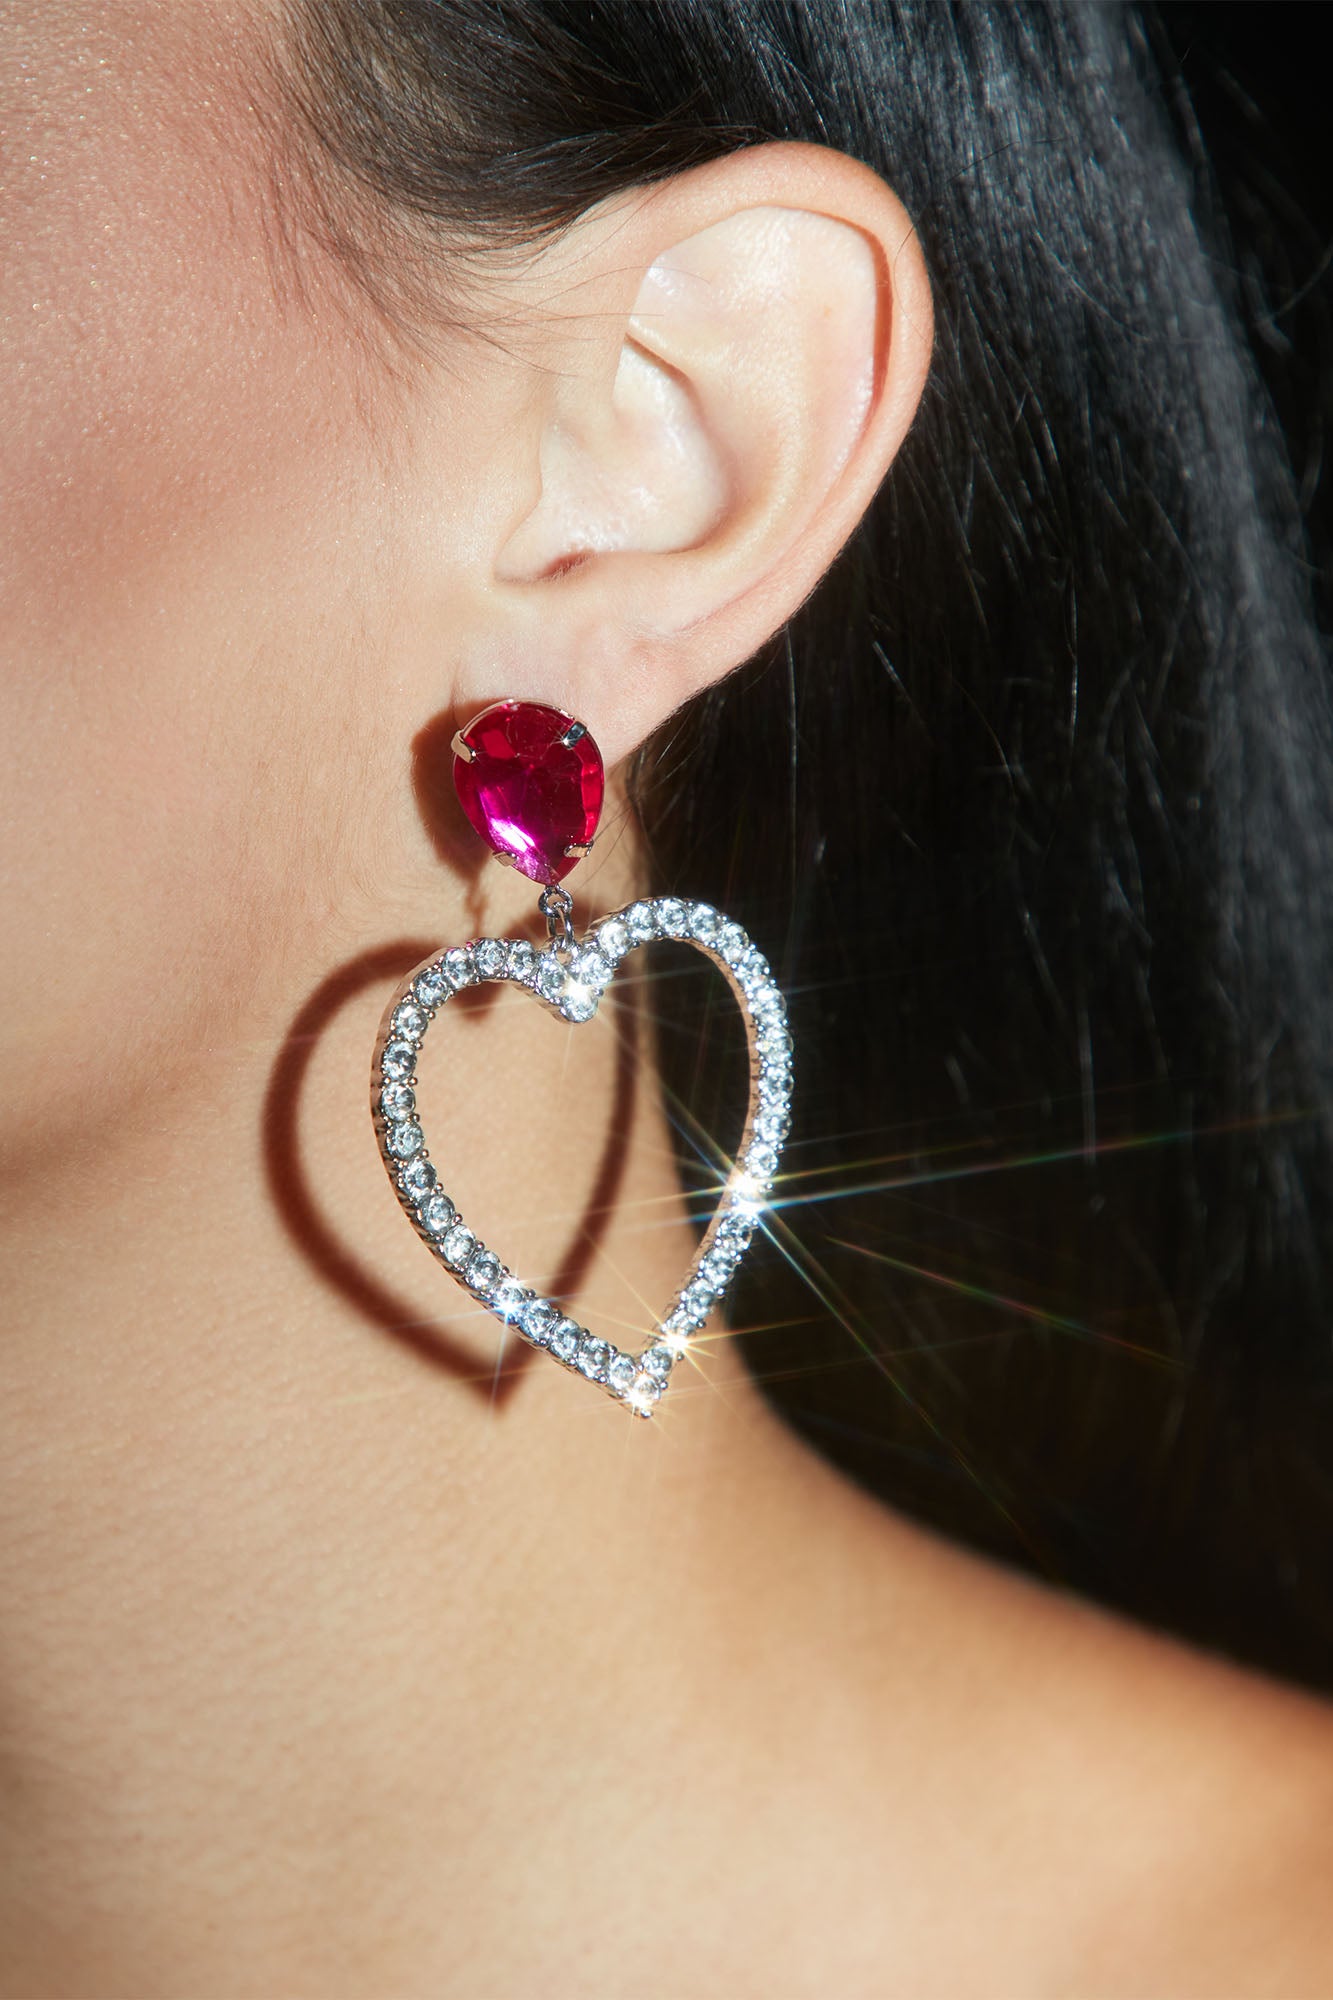 Follow Your Heart Earrings - Pink